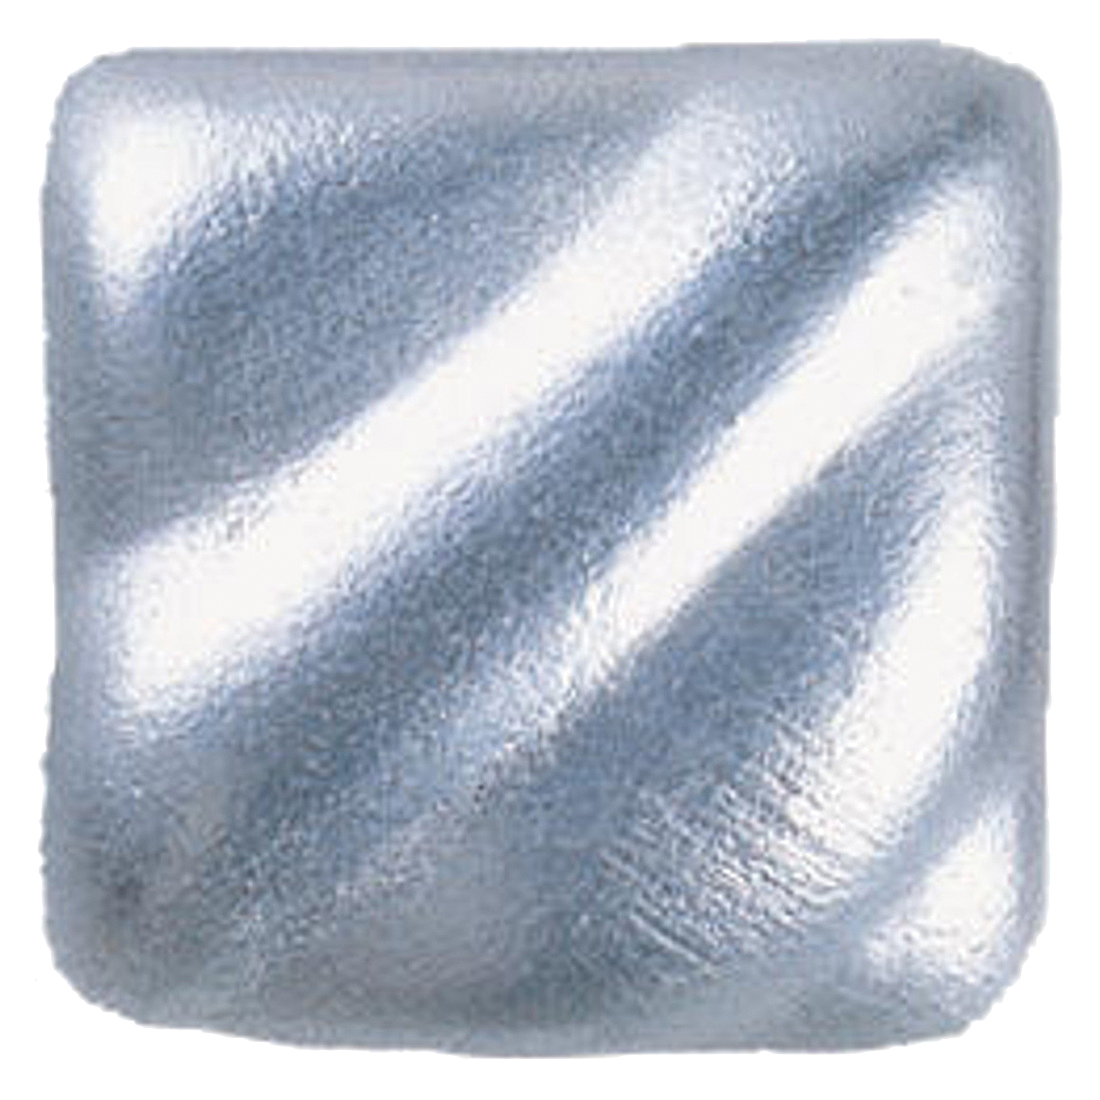 Amaco Rub 'N Buff Wax Metallic Finish, Silver Leaf, 0.5-Fluid